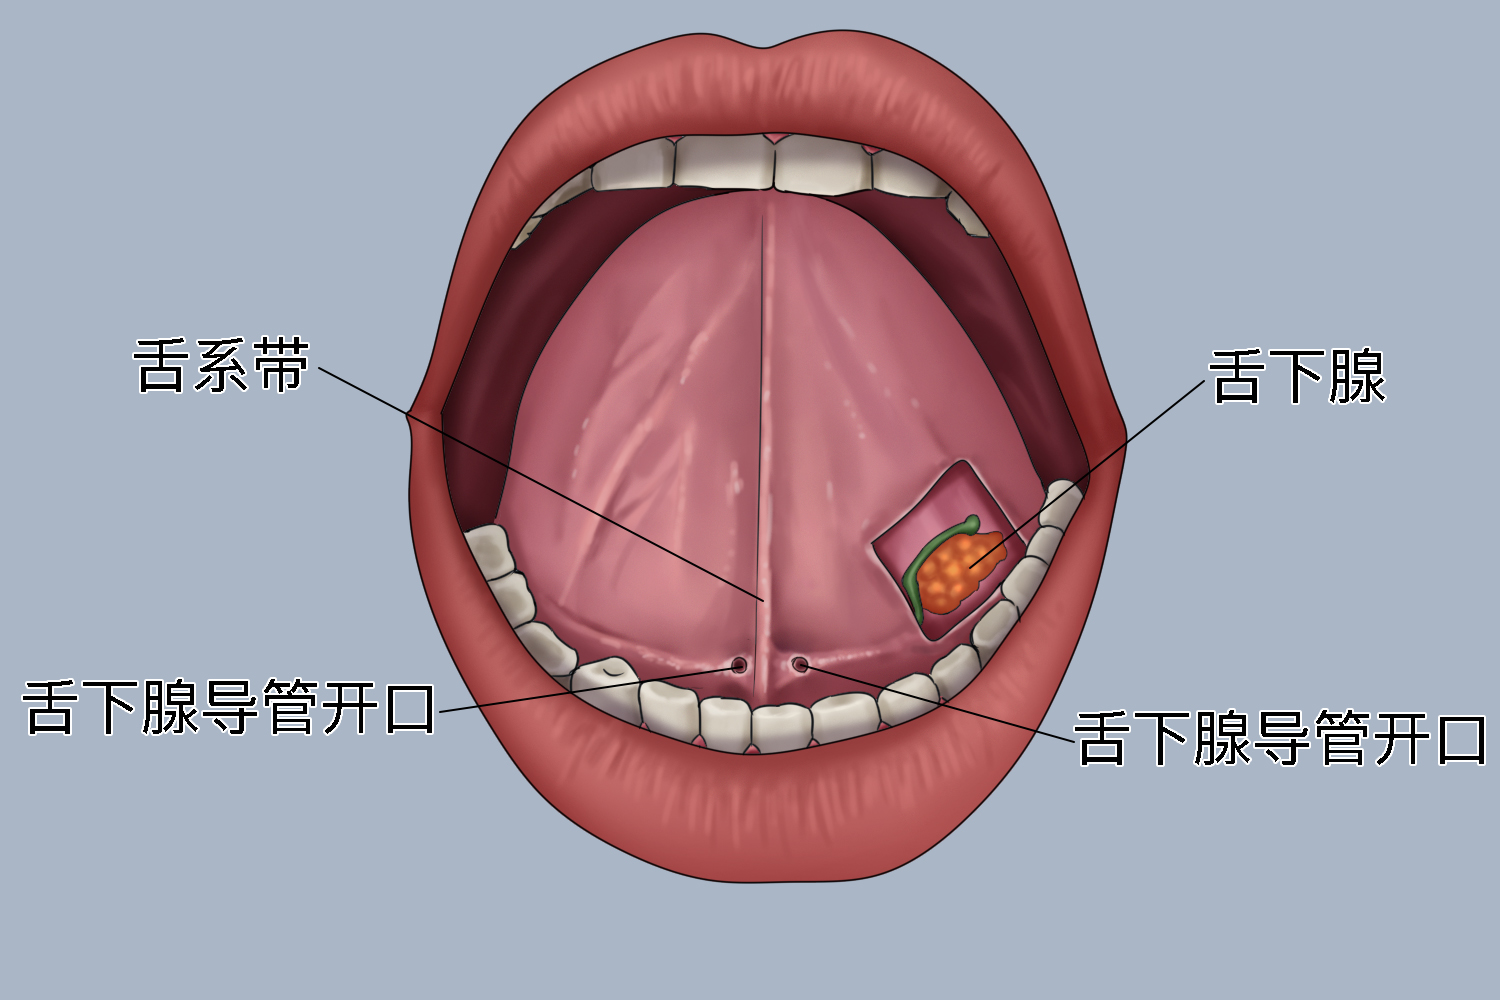 舌下腺为混合腺体,在口底黏膜舌下皱襞的深面,下颌舌骨肌以上